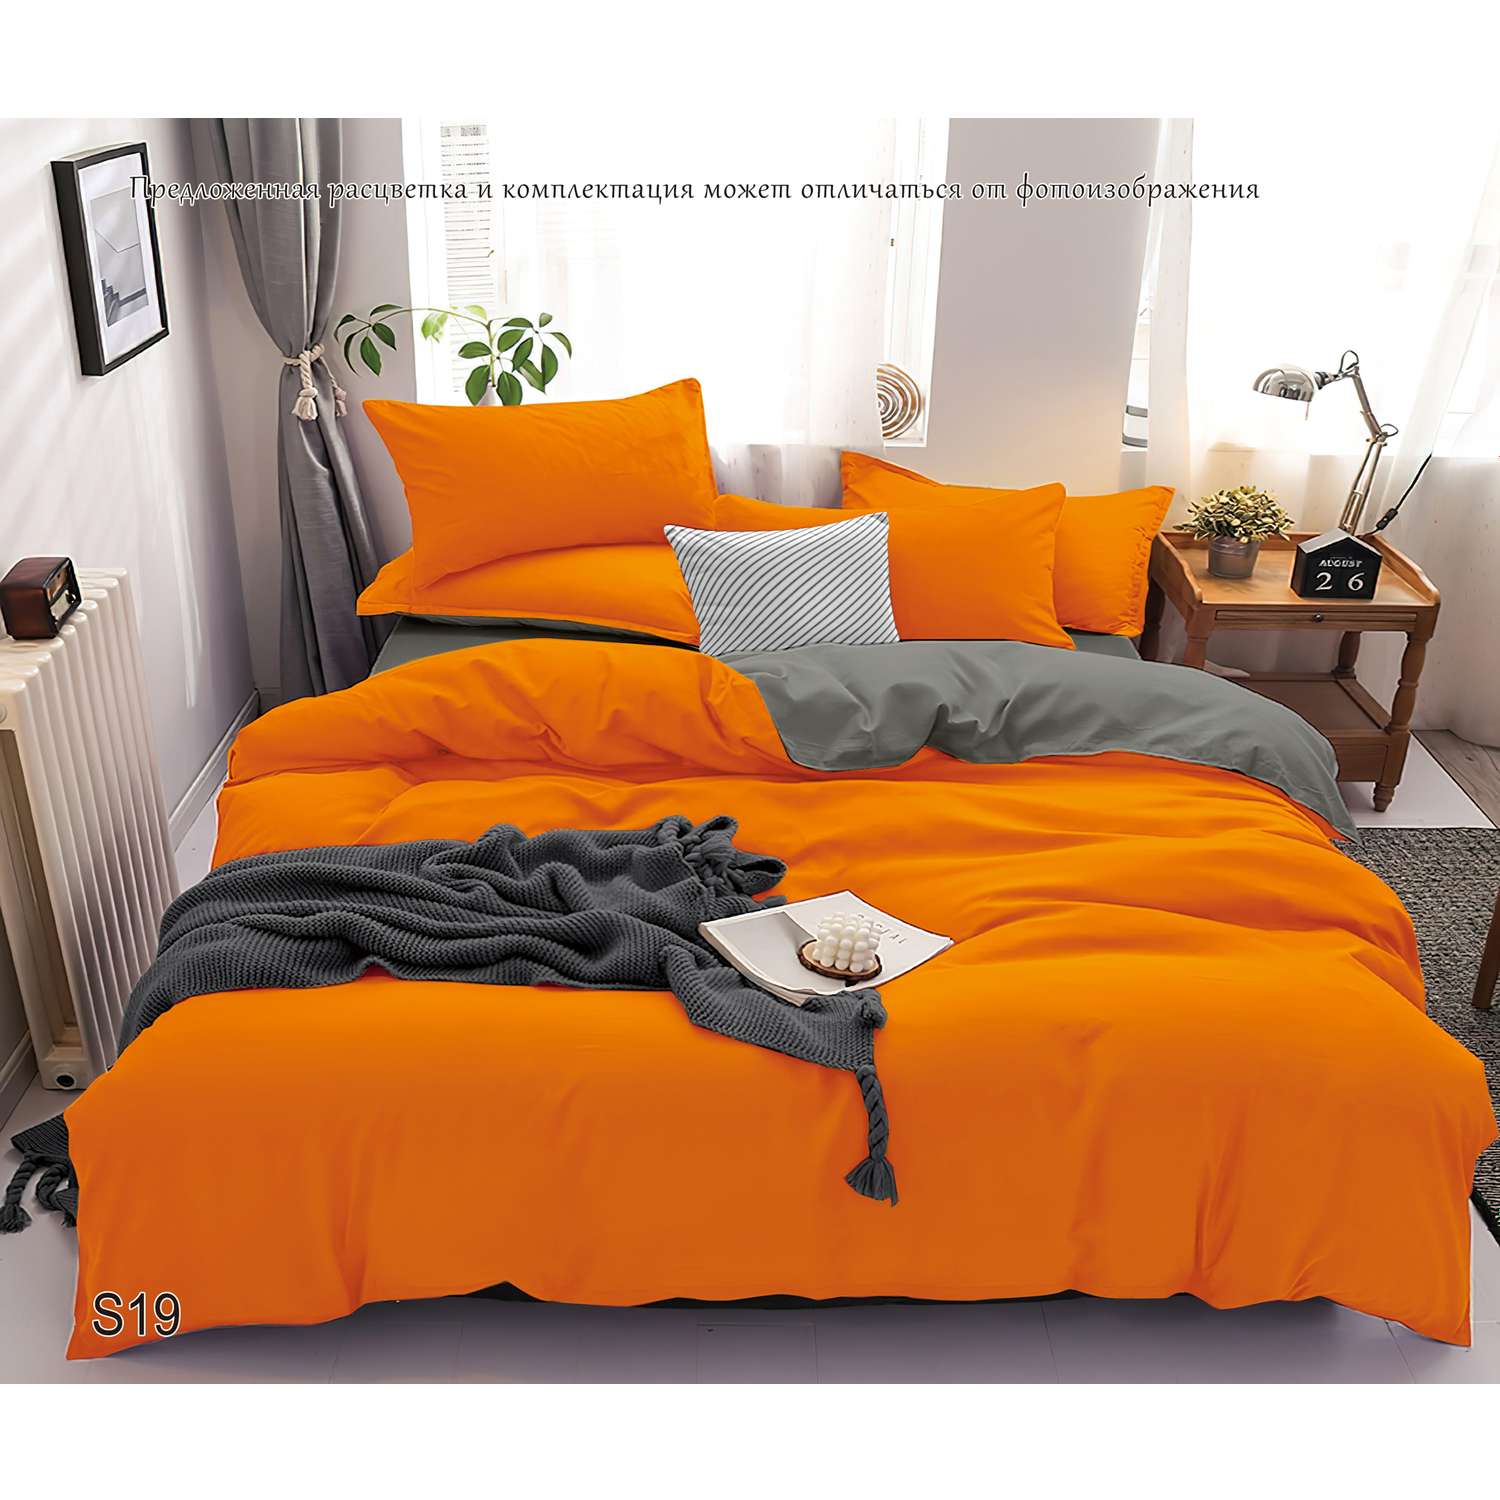 Комплект постельного белья PAVLine Манетти полисатин Евро оранжевый/серый S19 - фото 2